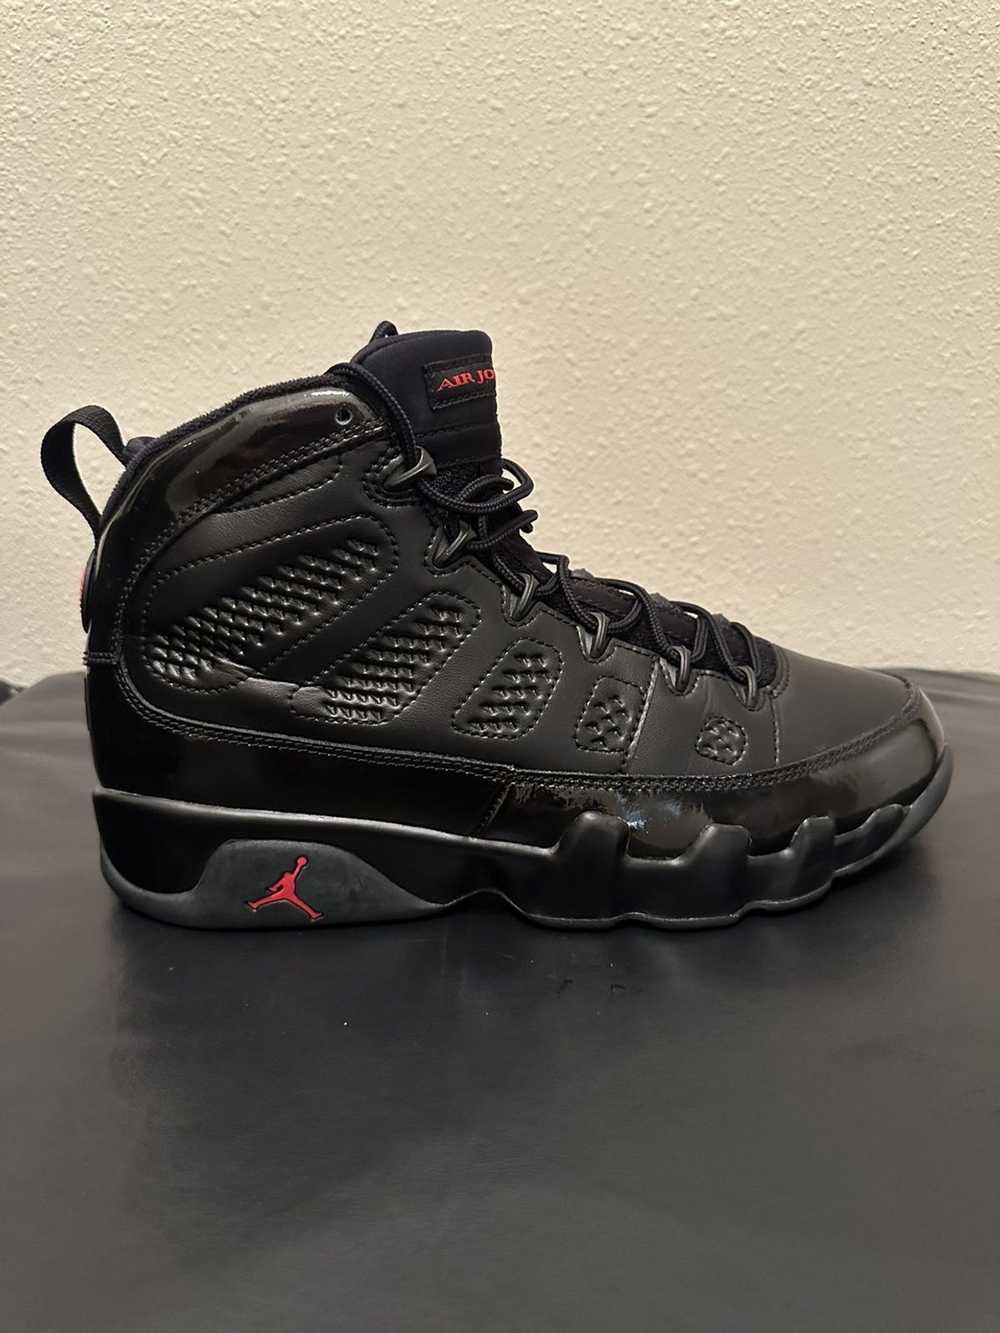 Jordan Brand × Nike Jordan 9 Retro Bred Patent - image 4